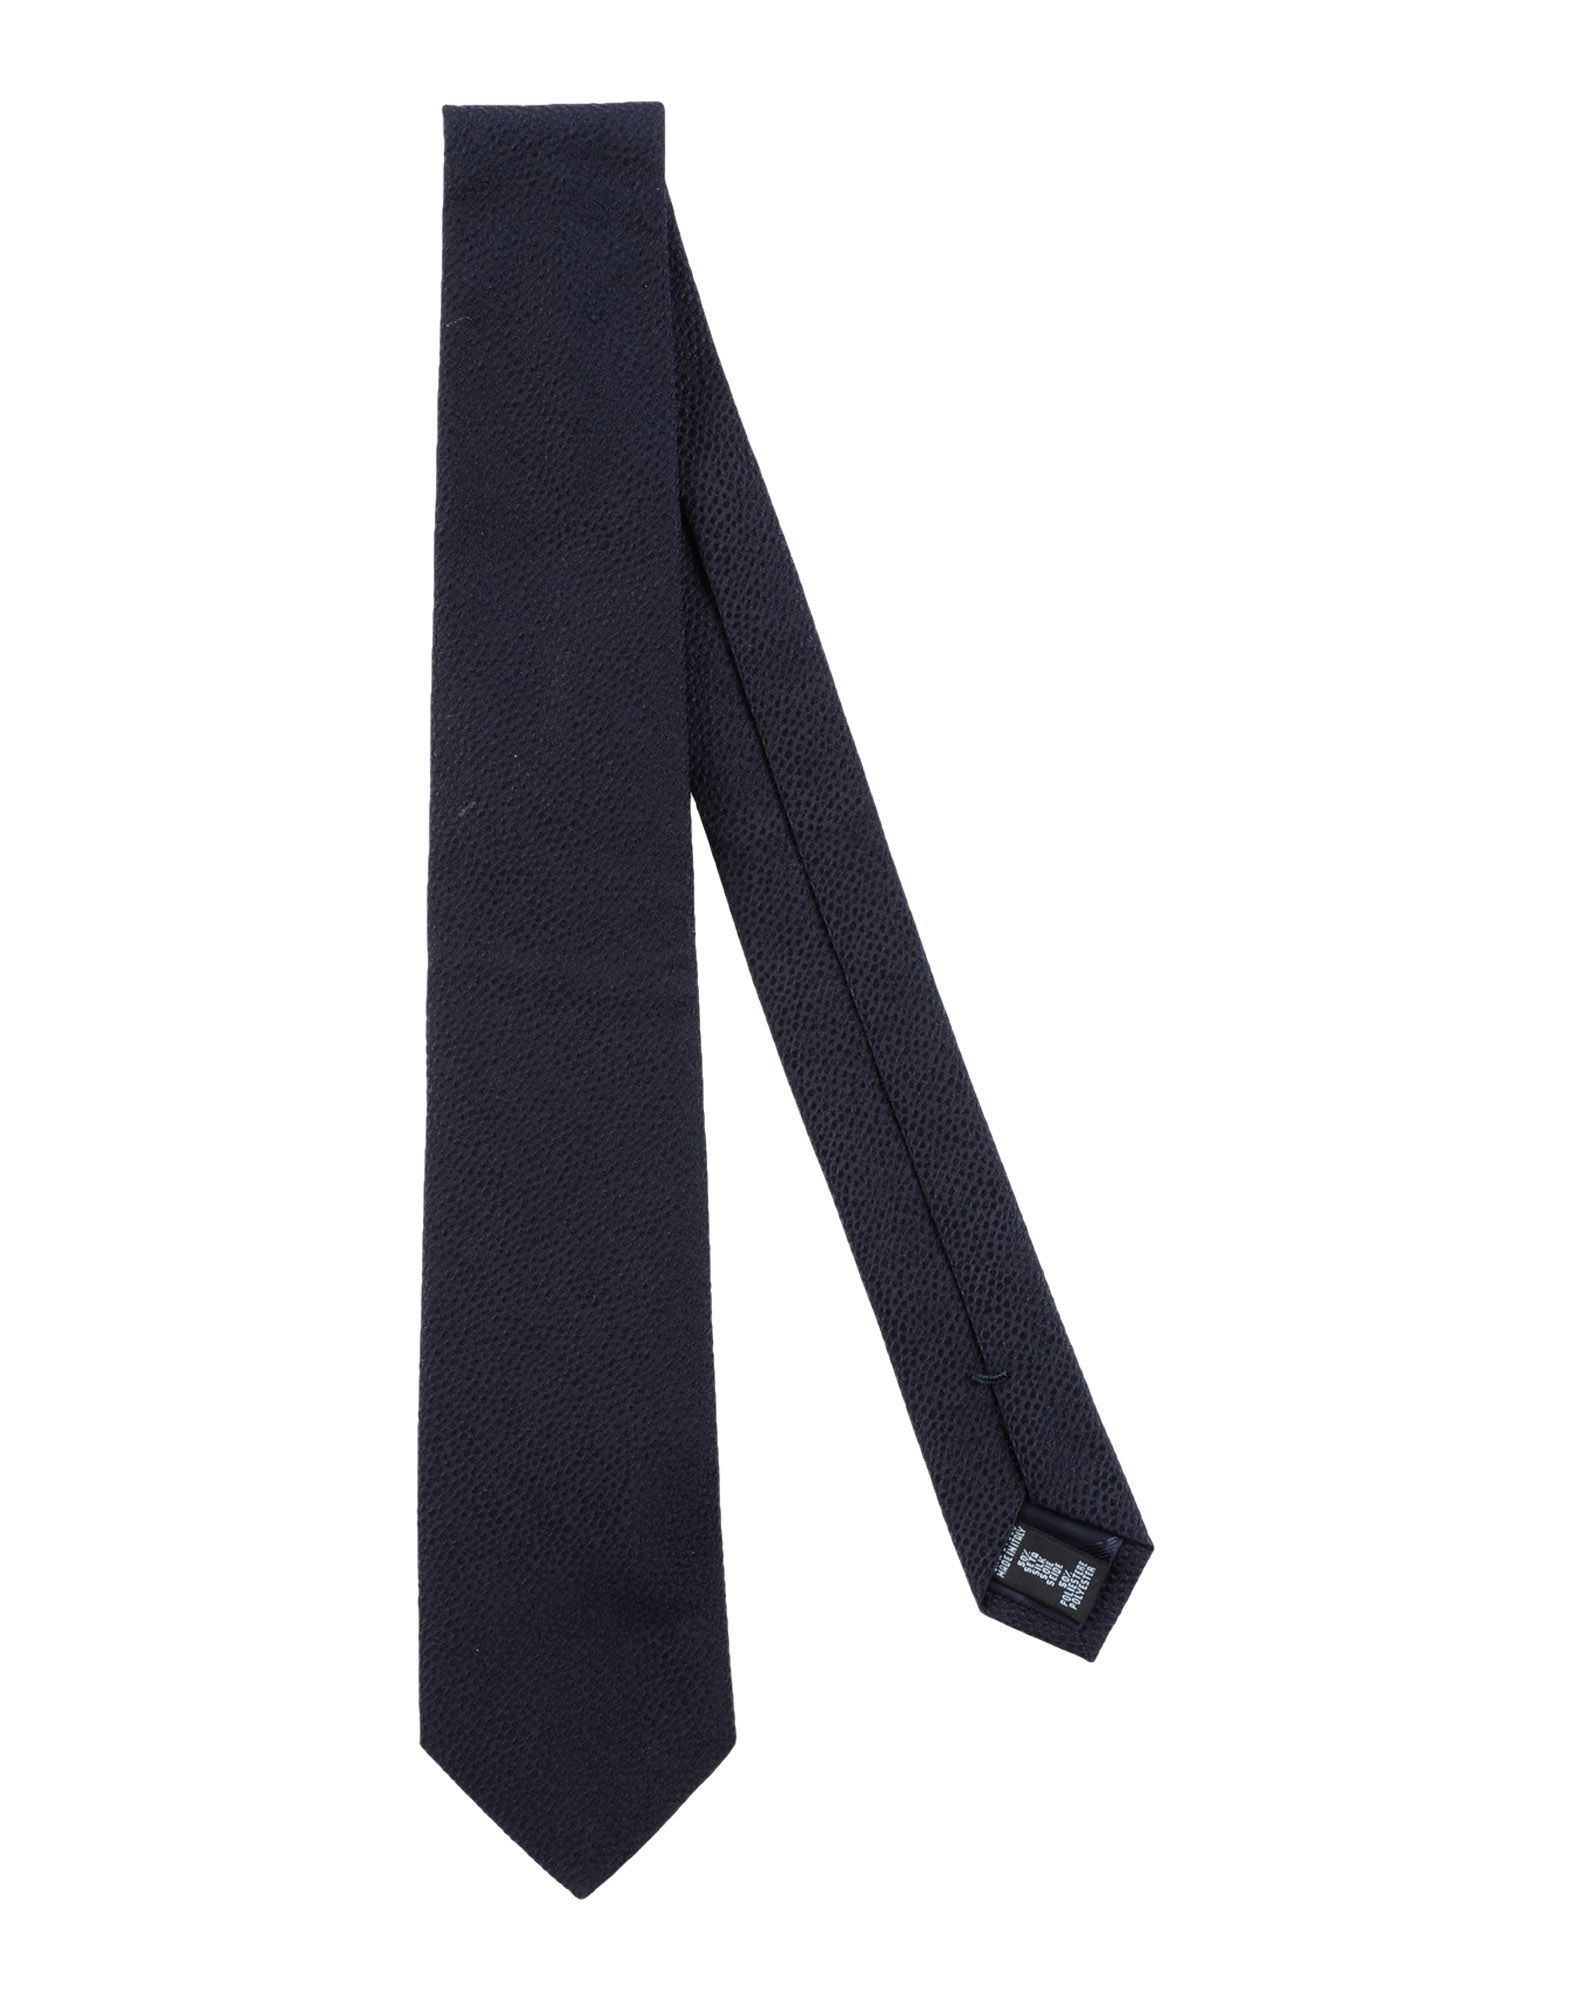 Emporio Armani Tie in Blue for Men - Lyst